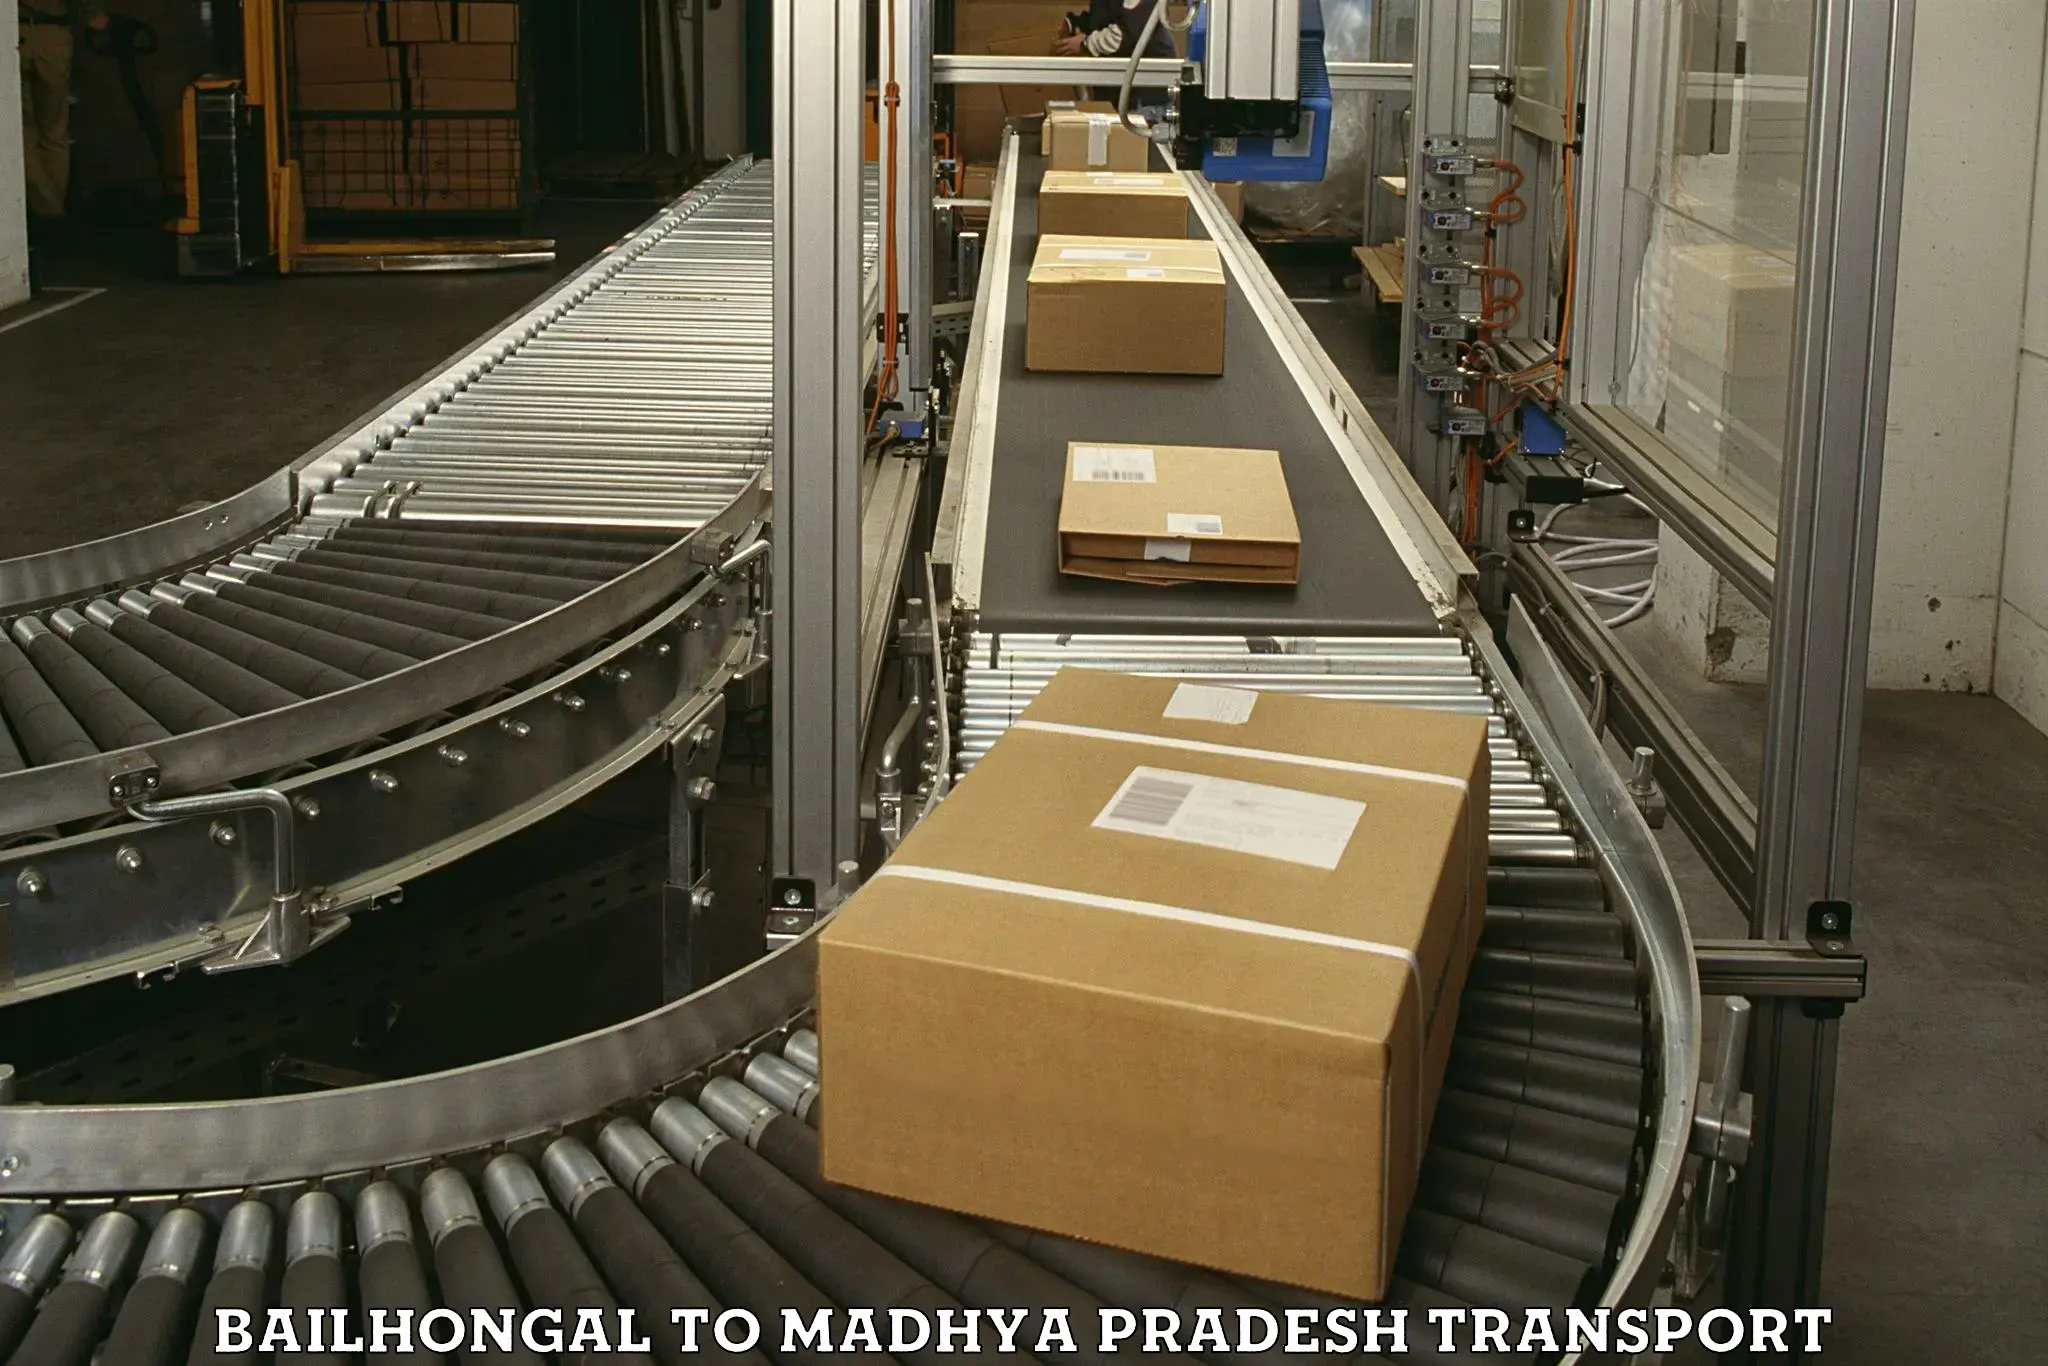 Furniture transport service in Bailhongal to Madhya Pradesh